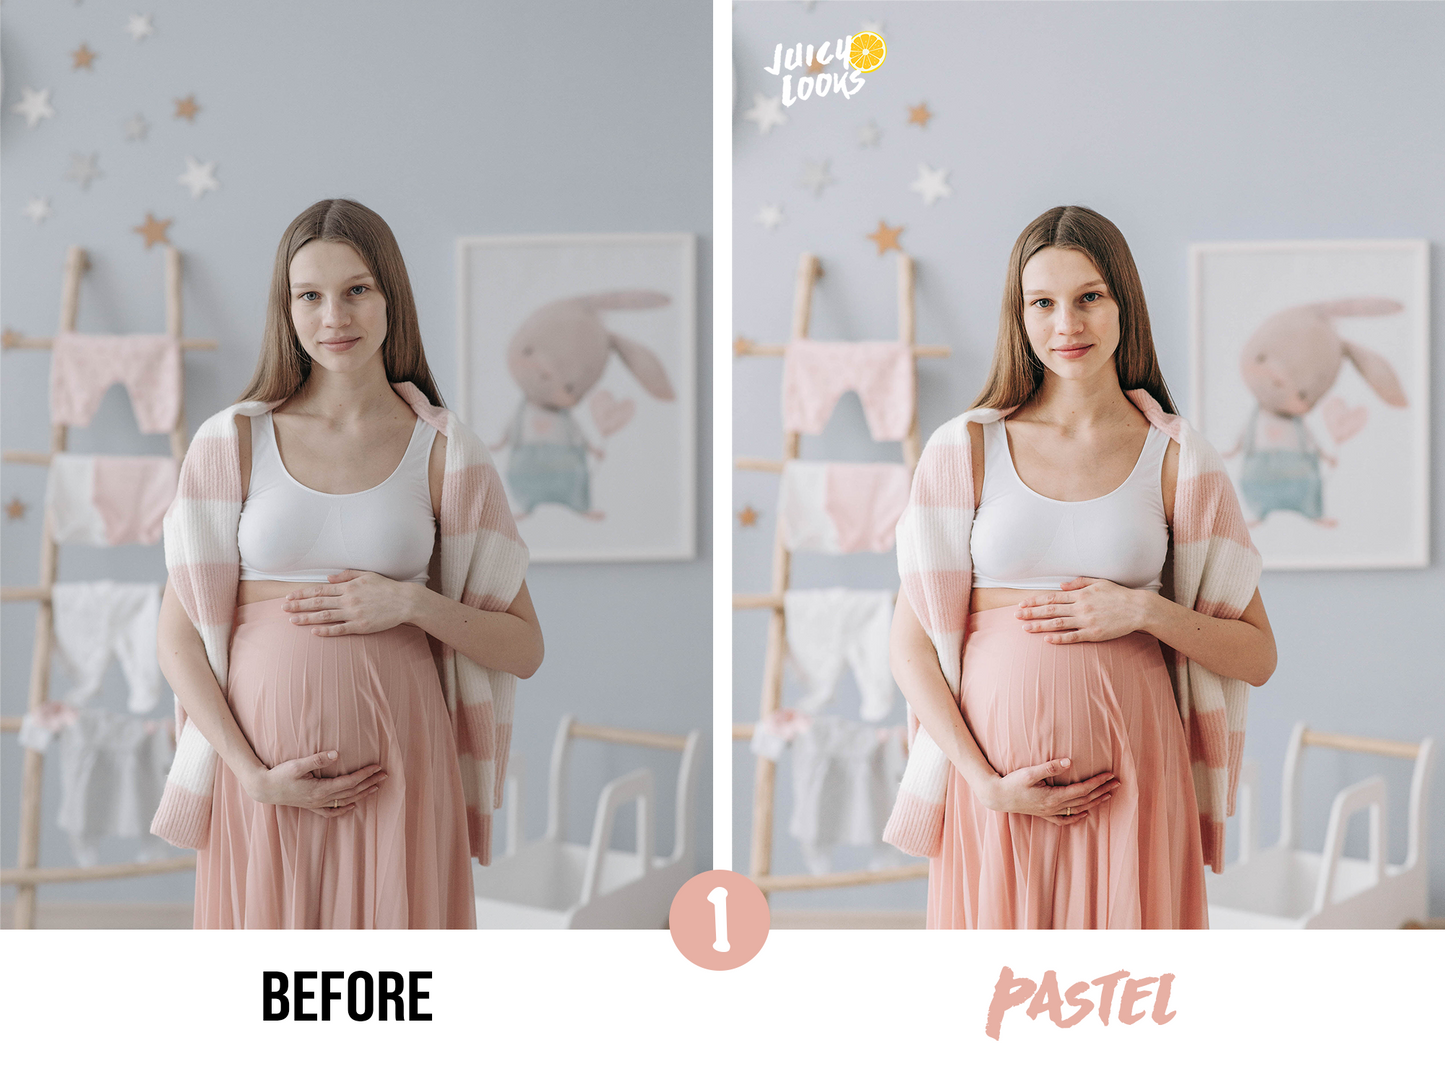 Maternity Lightroom Presets for Mobile & Desktop - Juicy Looks Presets